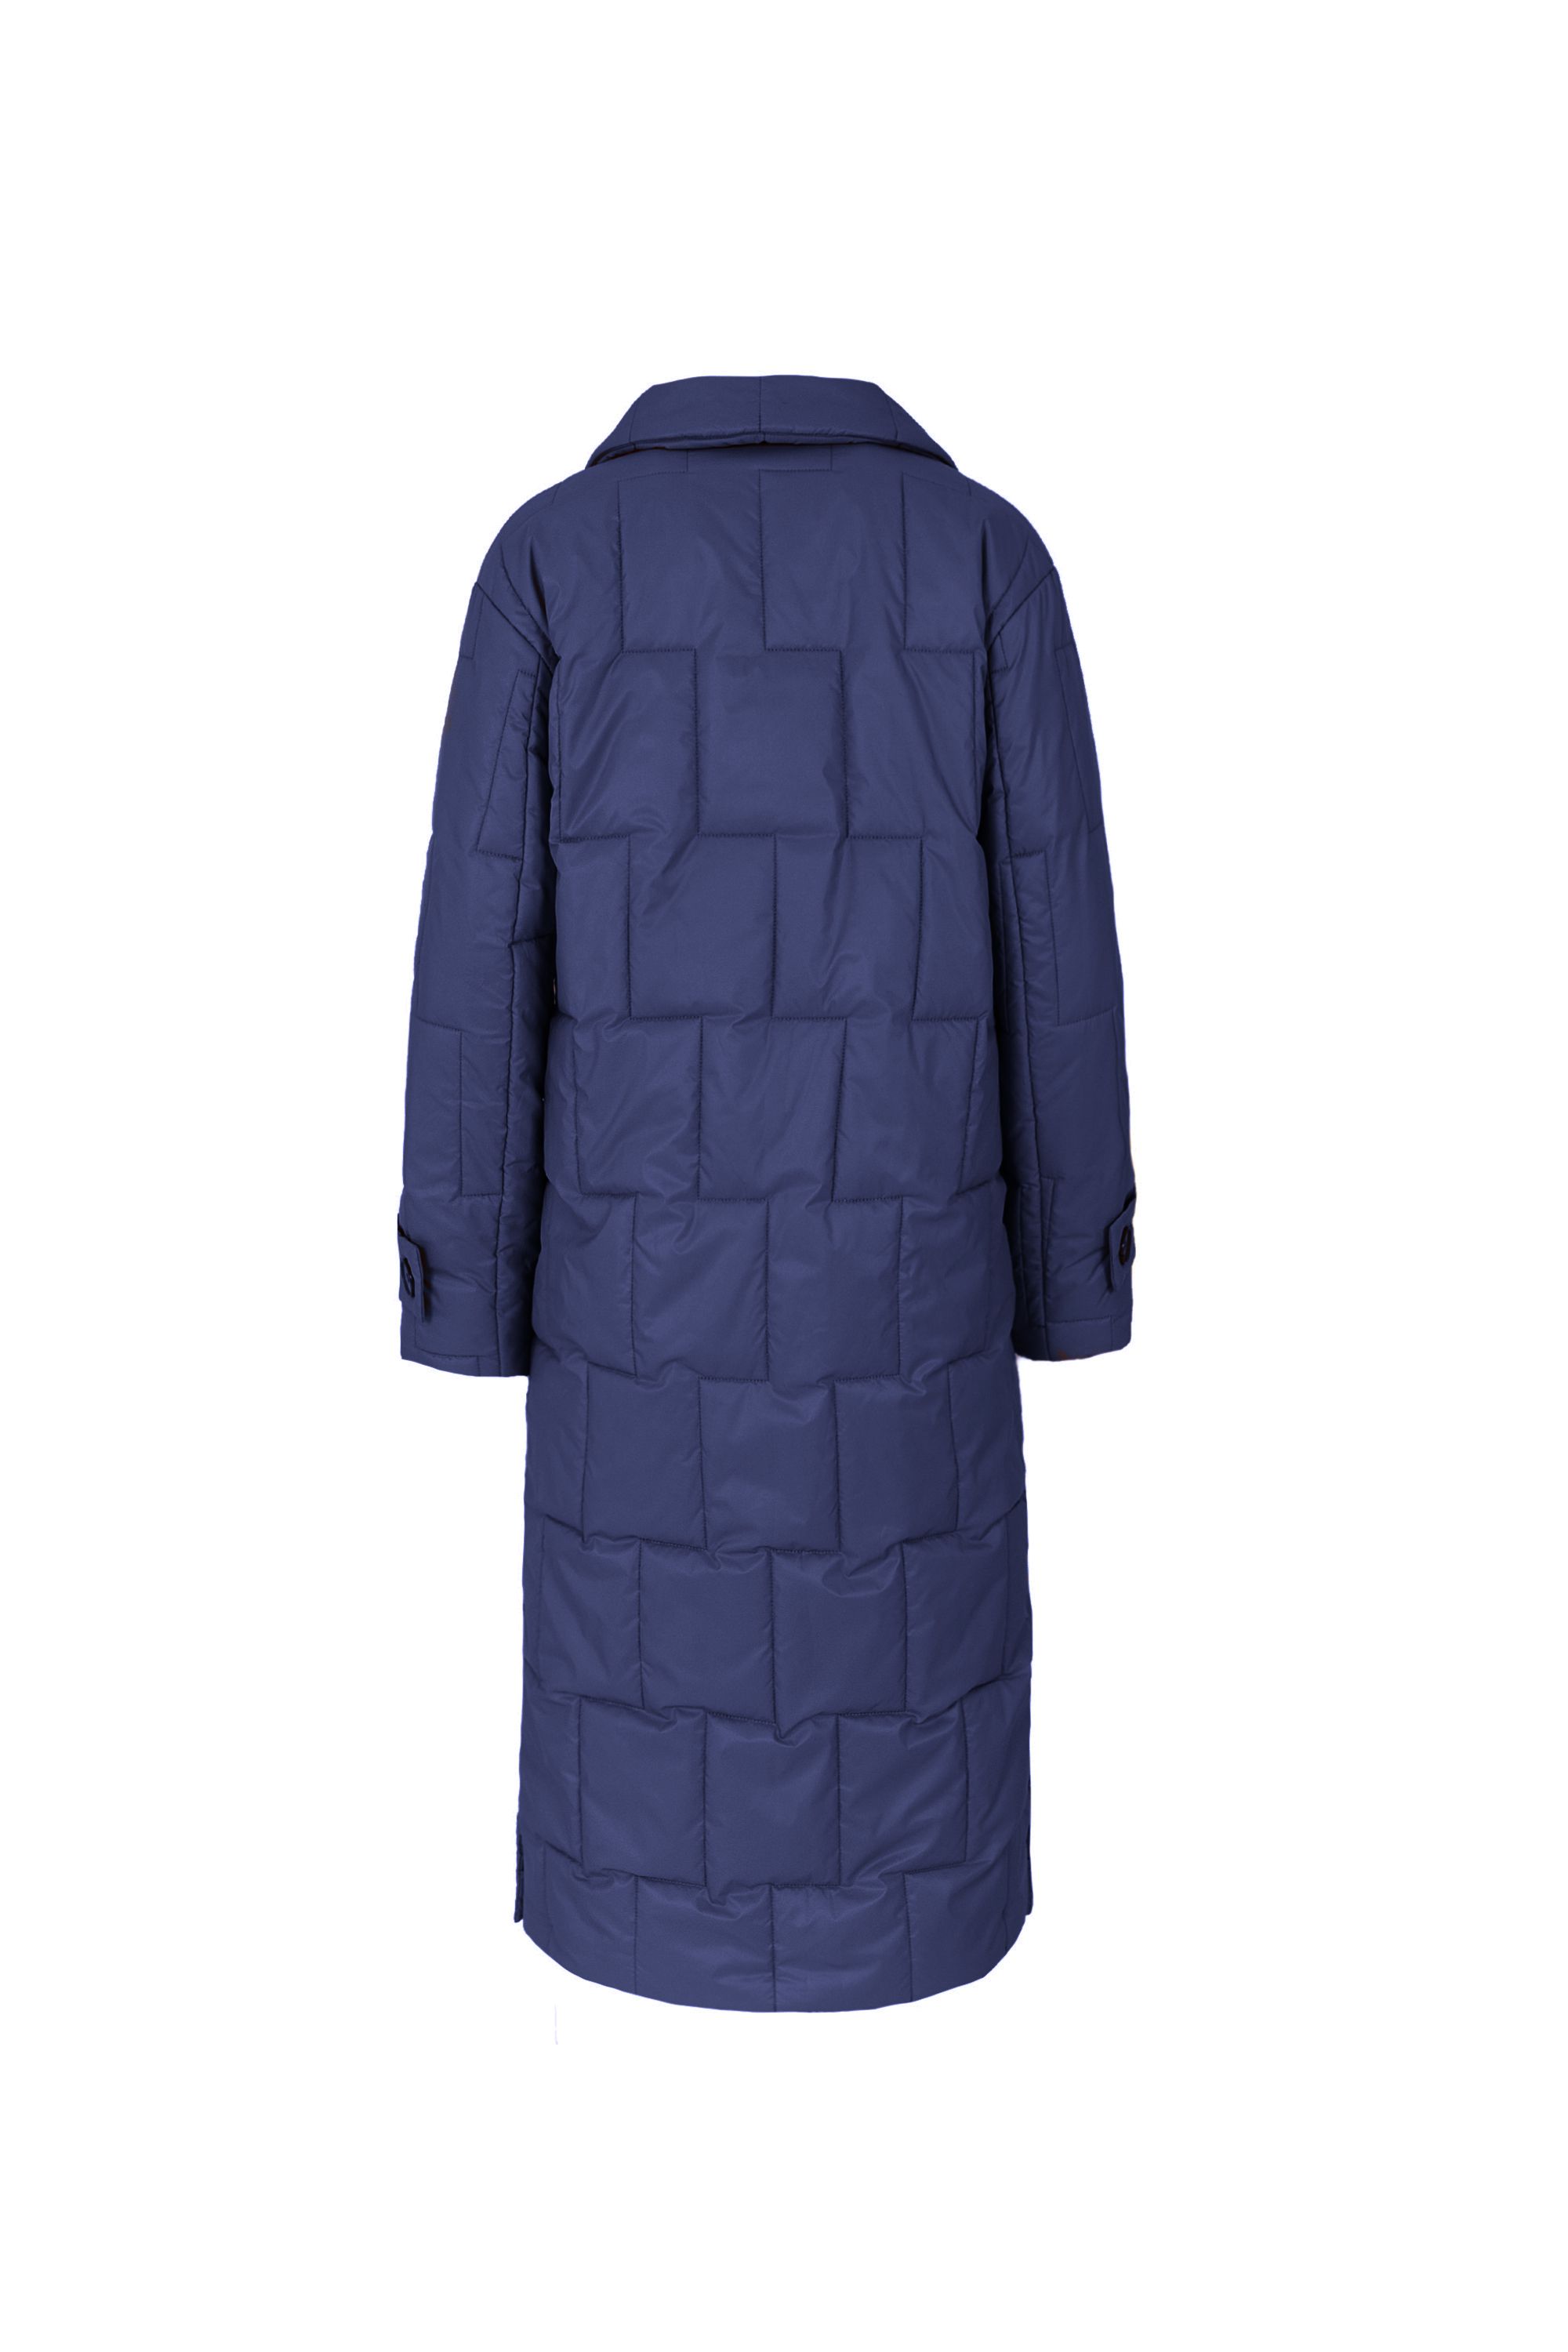 Пальто женское плащевое утепленное 5-12593-1. Фото 3.